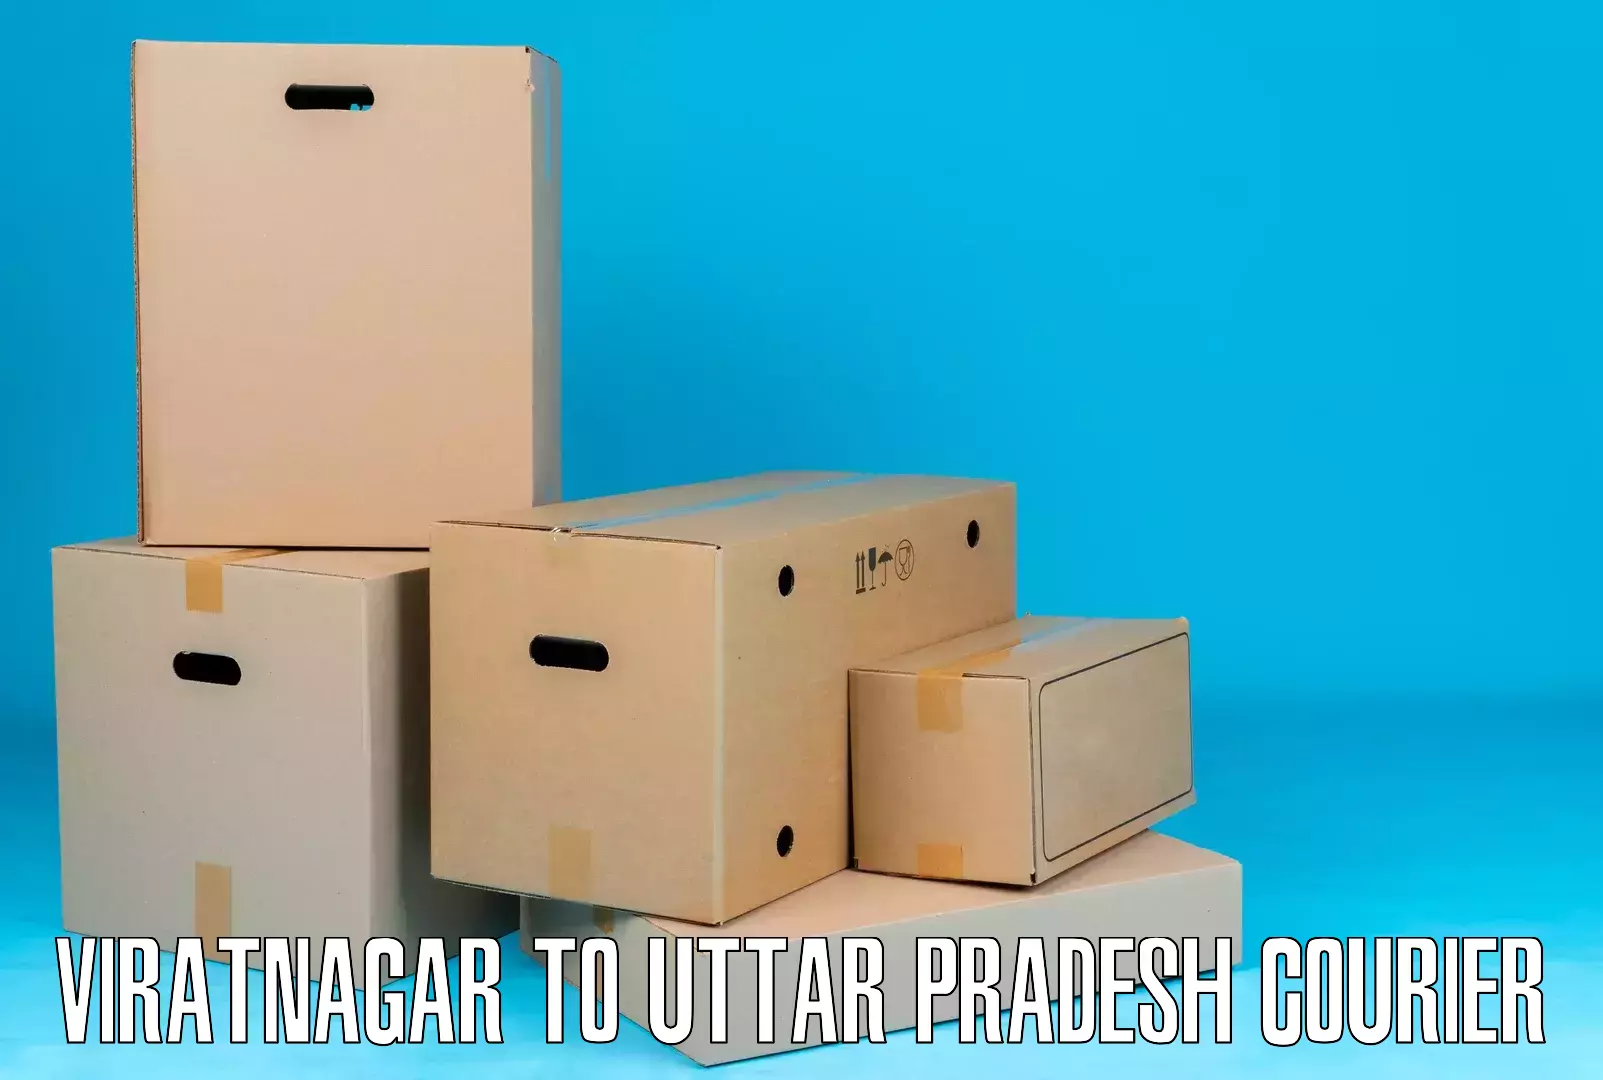 Discounted shipping Viratnagar to Moradabad